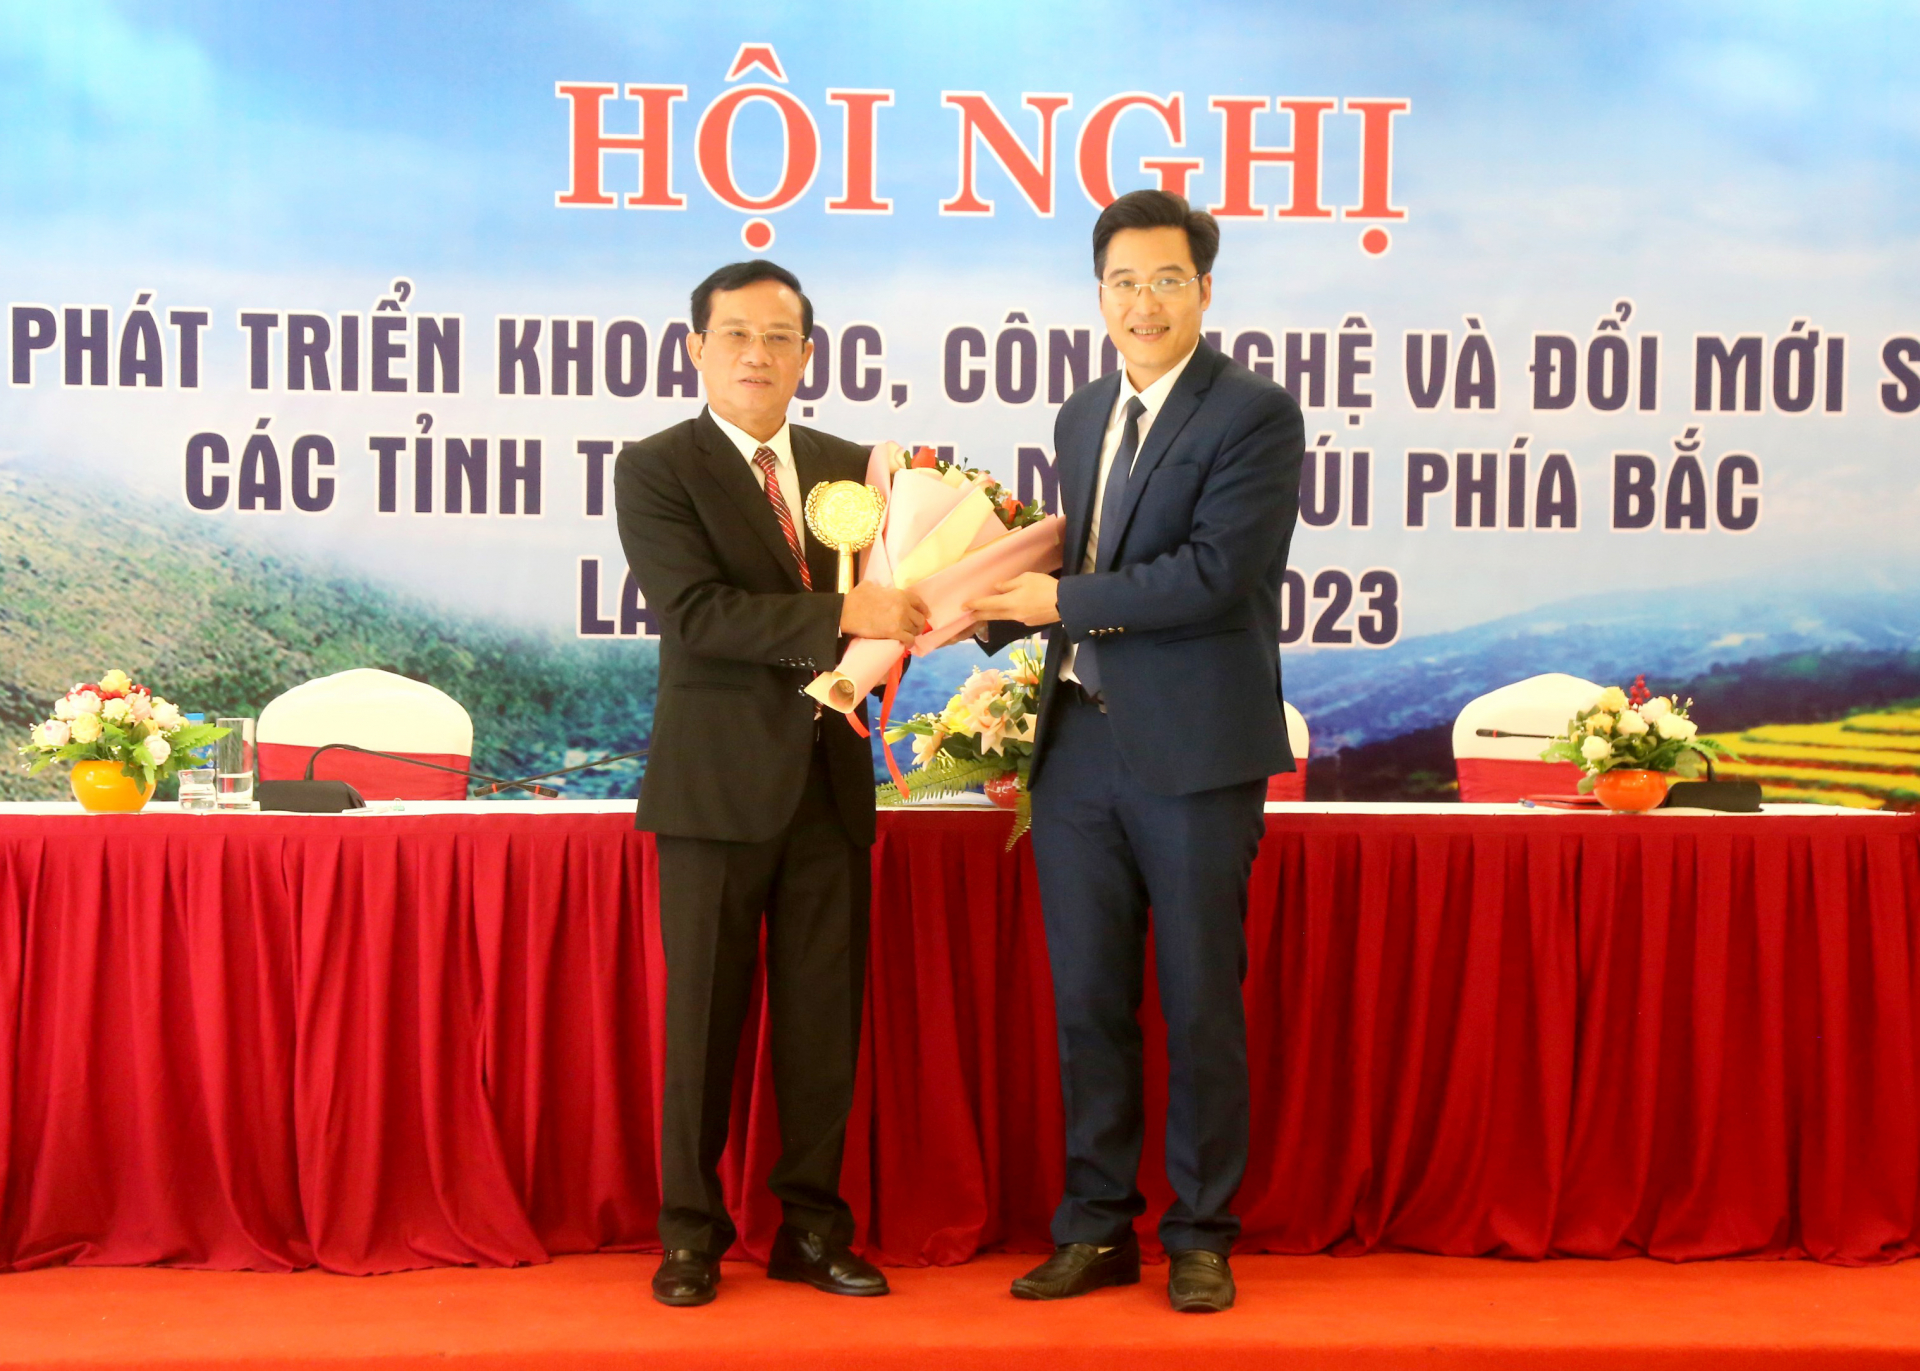 Lãnh đạo Sở KH&CN tỉnh Hà Giang trao cúp đăng cai cho Sở KH&CN tỉnh Lào Cai.